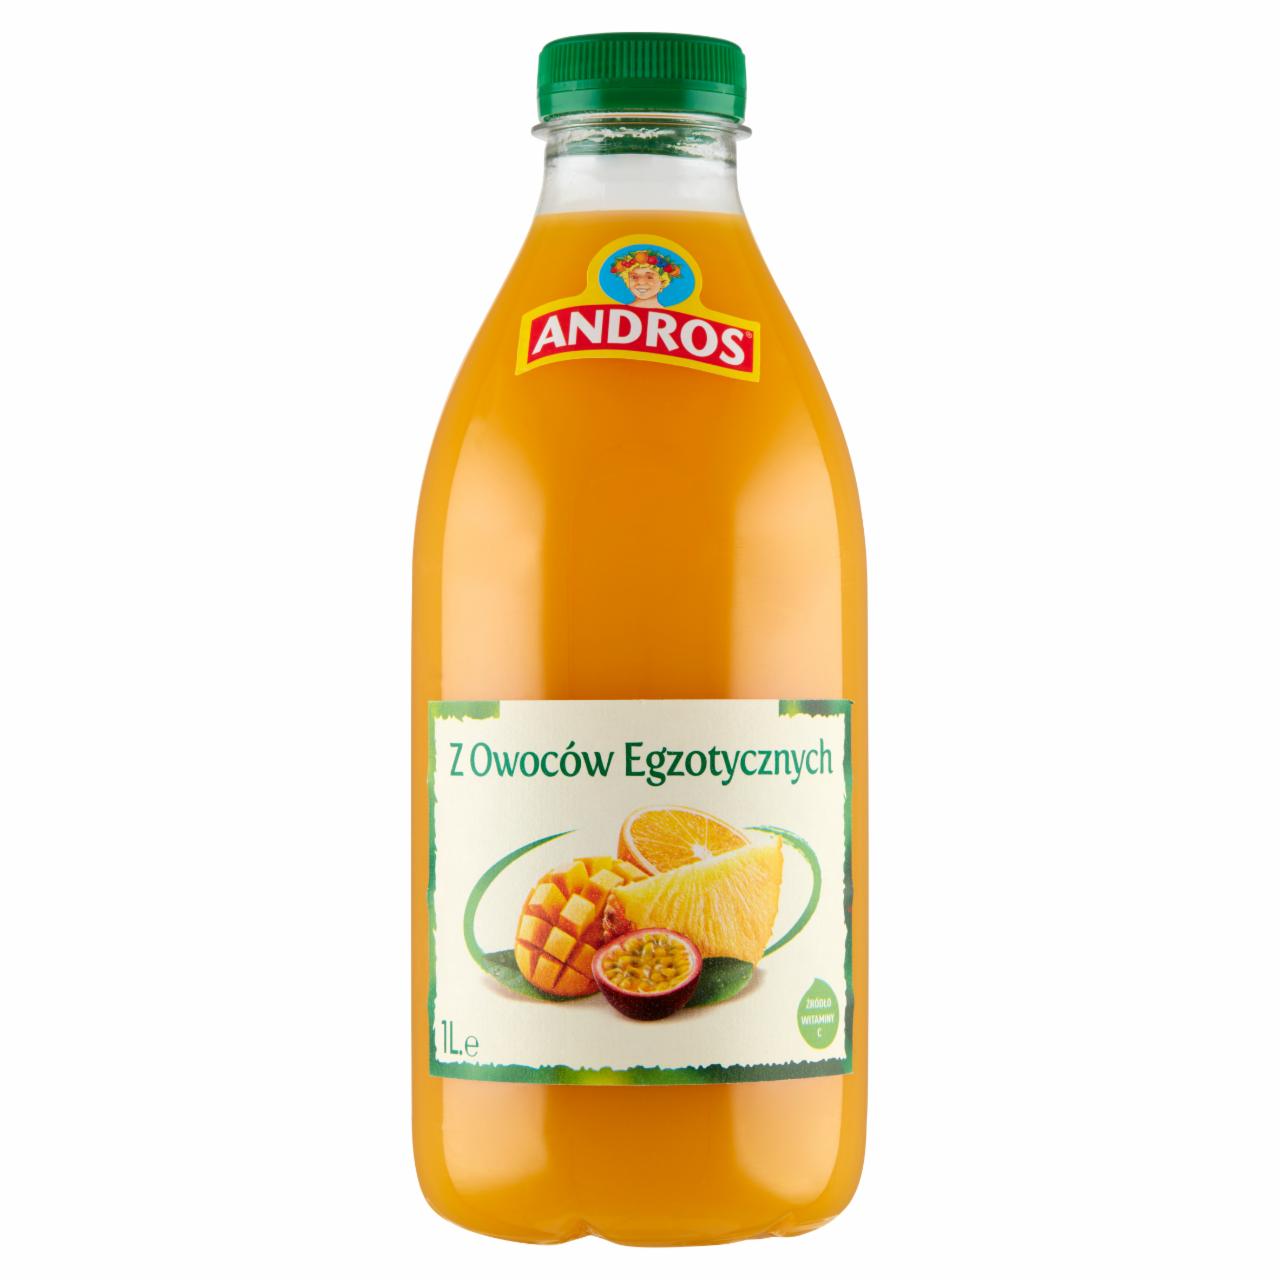 Zdjęcia - Andros Produkt do picia z owoców egzotycznych 1 l